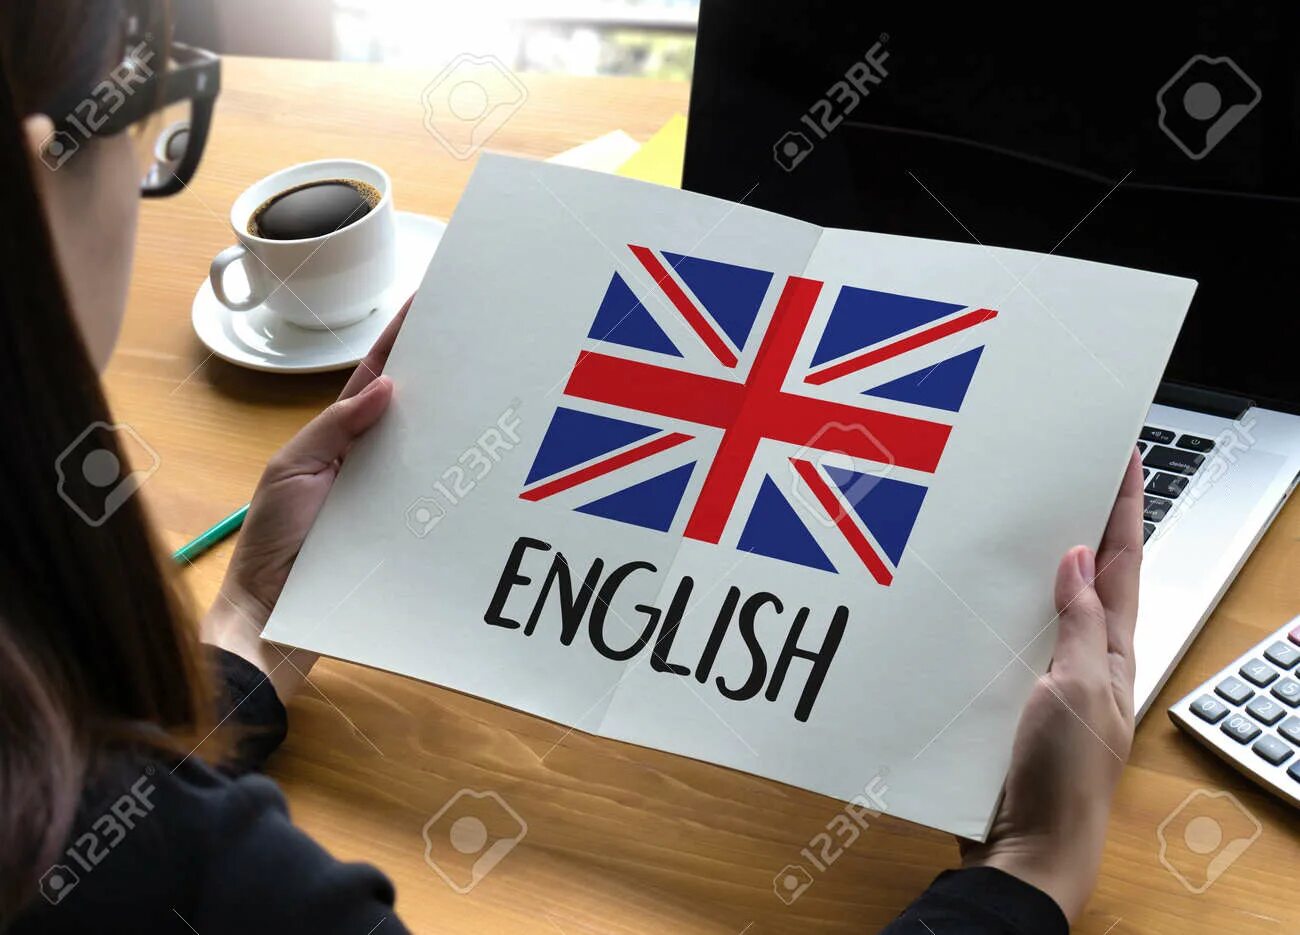 Свободный на английском. Английский в совершенстве. Английский язык в совершенстве. Свободный английский. Я владею английским языком в совершенстве.